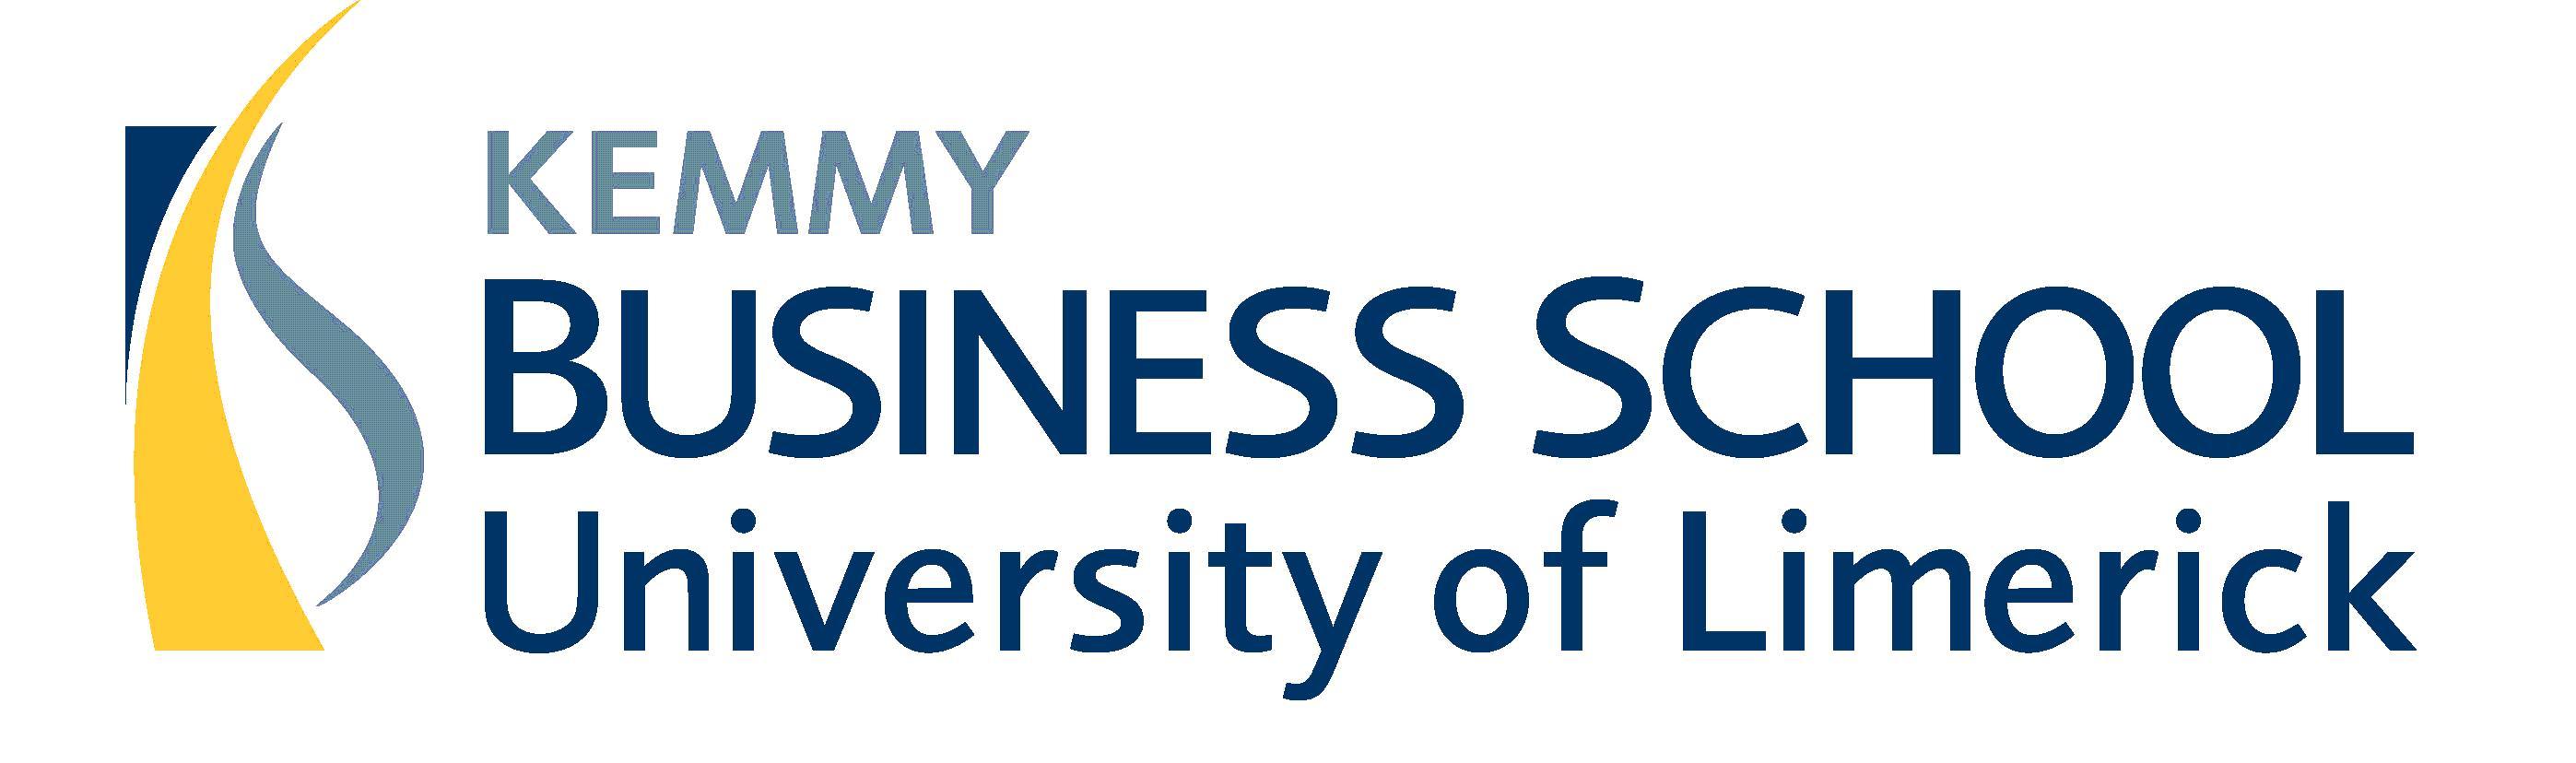 Logo University of Limerick - Kemmy Business School